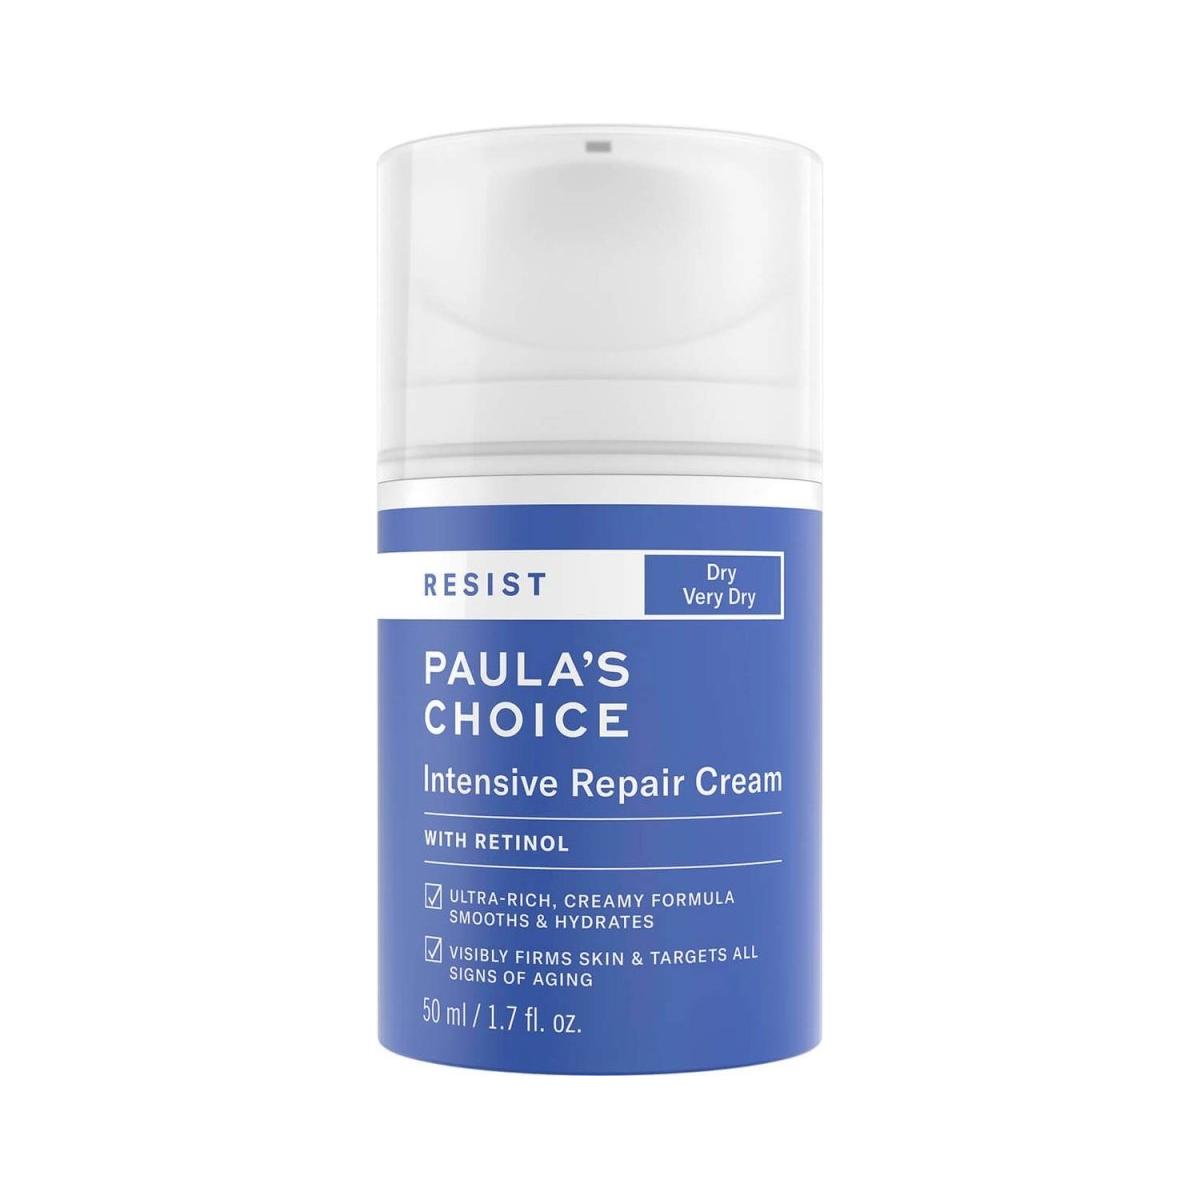 Paula's Choice Resist Intensive Repair Cream (50ml) - Glam Global UK